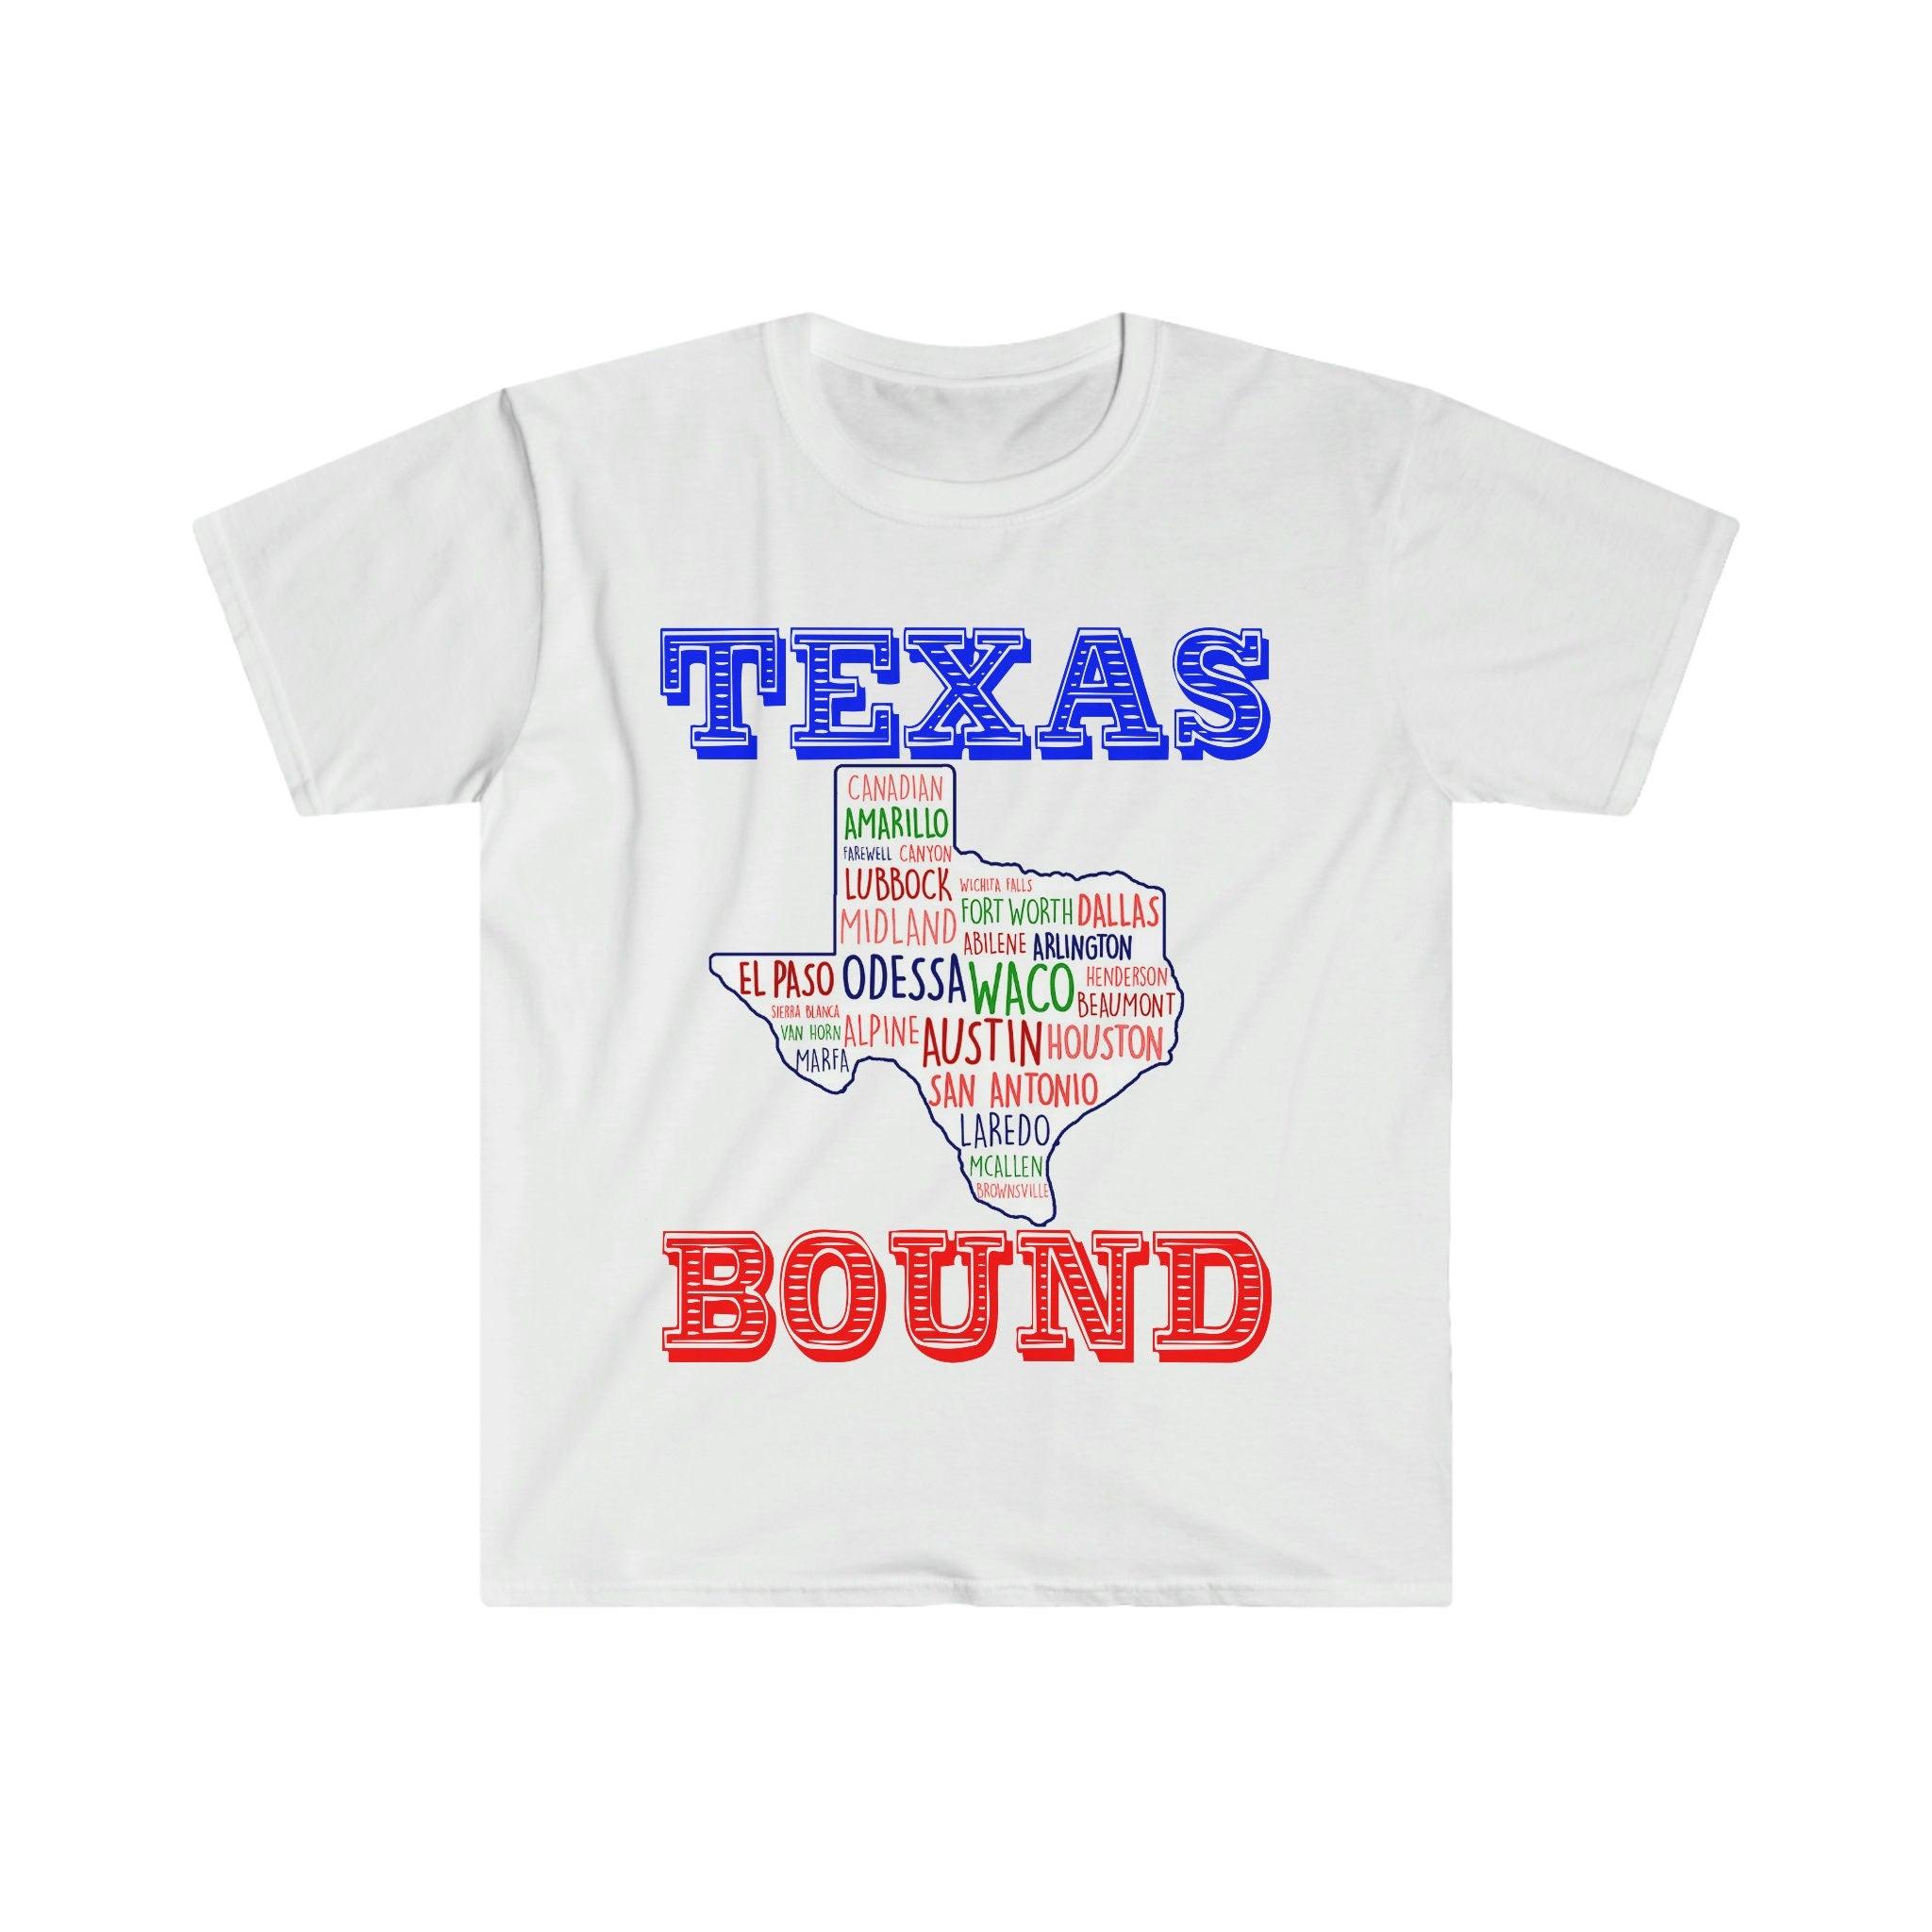 Τέξας Δεσμώτης | Texas Places T-Shirts |Texas Map T-Shirts, Moving to Austin , Welcome to Texas Gift, Texas Bound, New in Texas, Moving to DFW Beat biden φορολογική αύξηση, φορολογικό σχέδιο Biden, παράκτια φιλελεύθερη, Χιούστον, μετακίνηση στο Ώστιν, Μετακόμιση προς DFW, Μετακόμιση στο Τέξας, Μετακόμιση στο Τέξας Κούπα, Νέα στο Τέξας, Ρεπουμπλικάνος, Μπλουζάκι, μπλουζάκια, Τέξας δεσμευμένο, κορίτσι του Τέξας, Ρεπουμπλικάνος του Τέξας στο - plusminusco.com